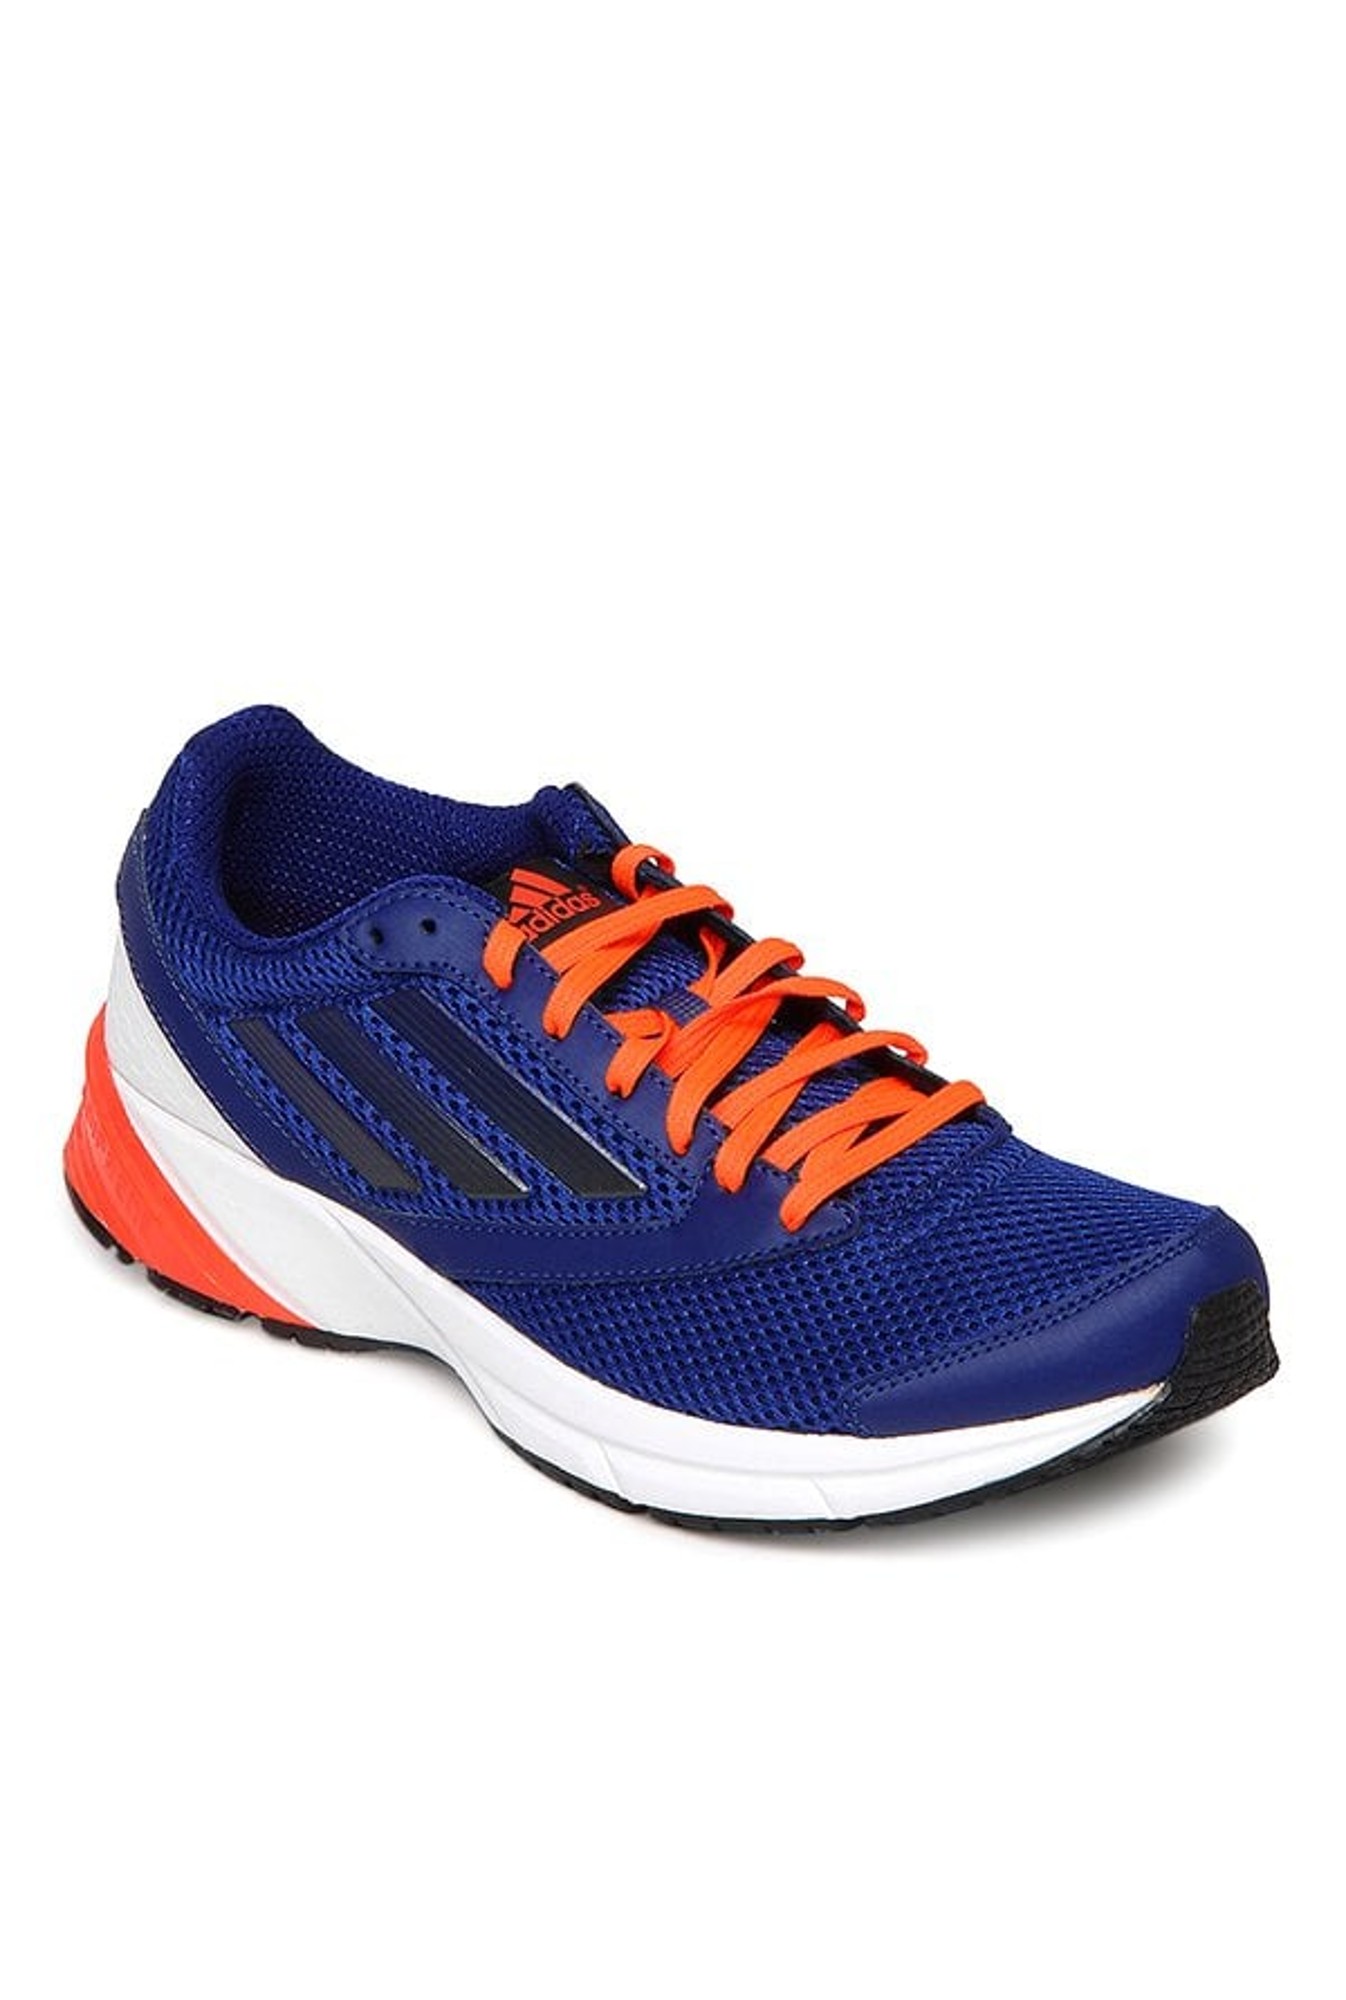 adidas orange and blue shoes